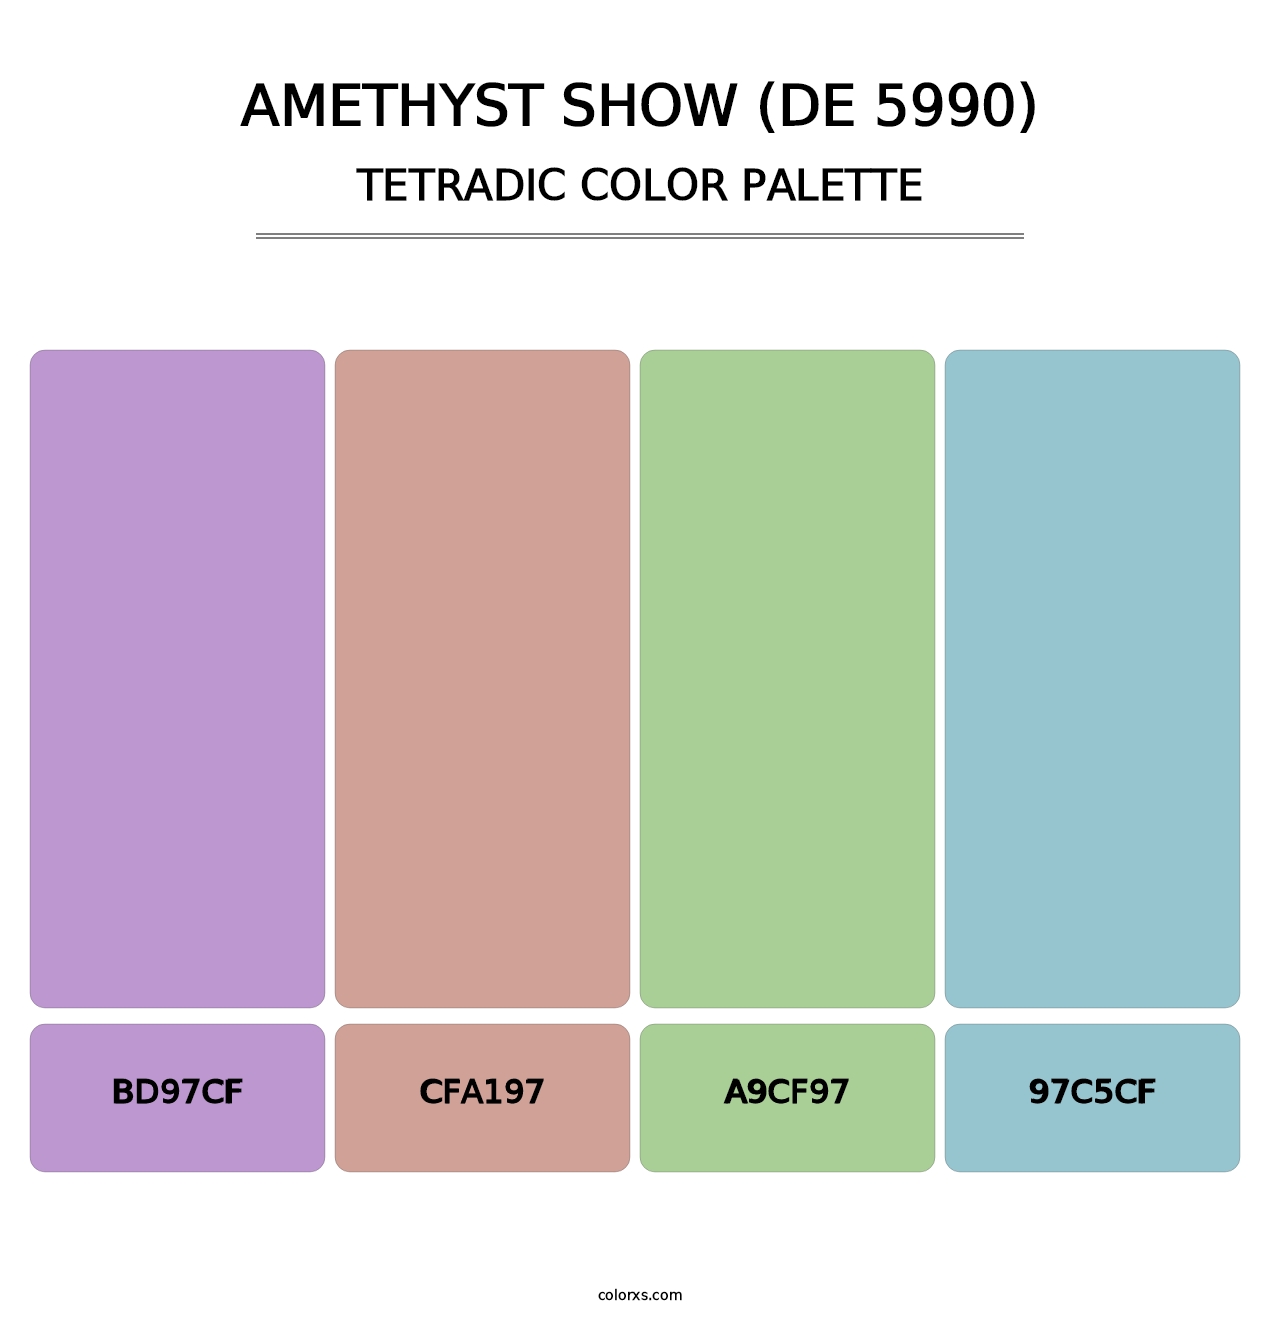 Amethyst Show (DE 5990) - Tetradic Color Palette